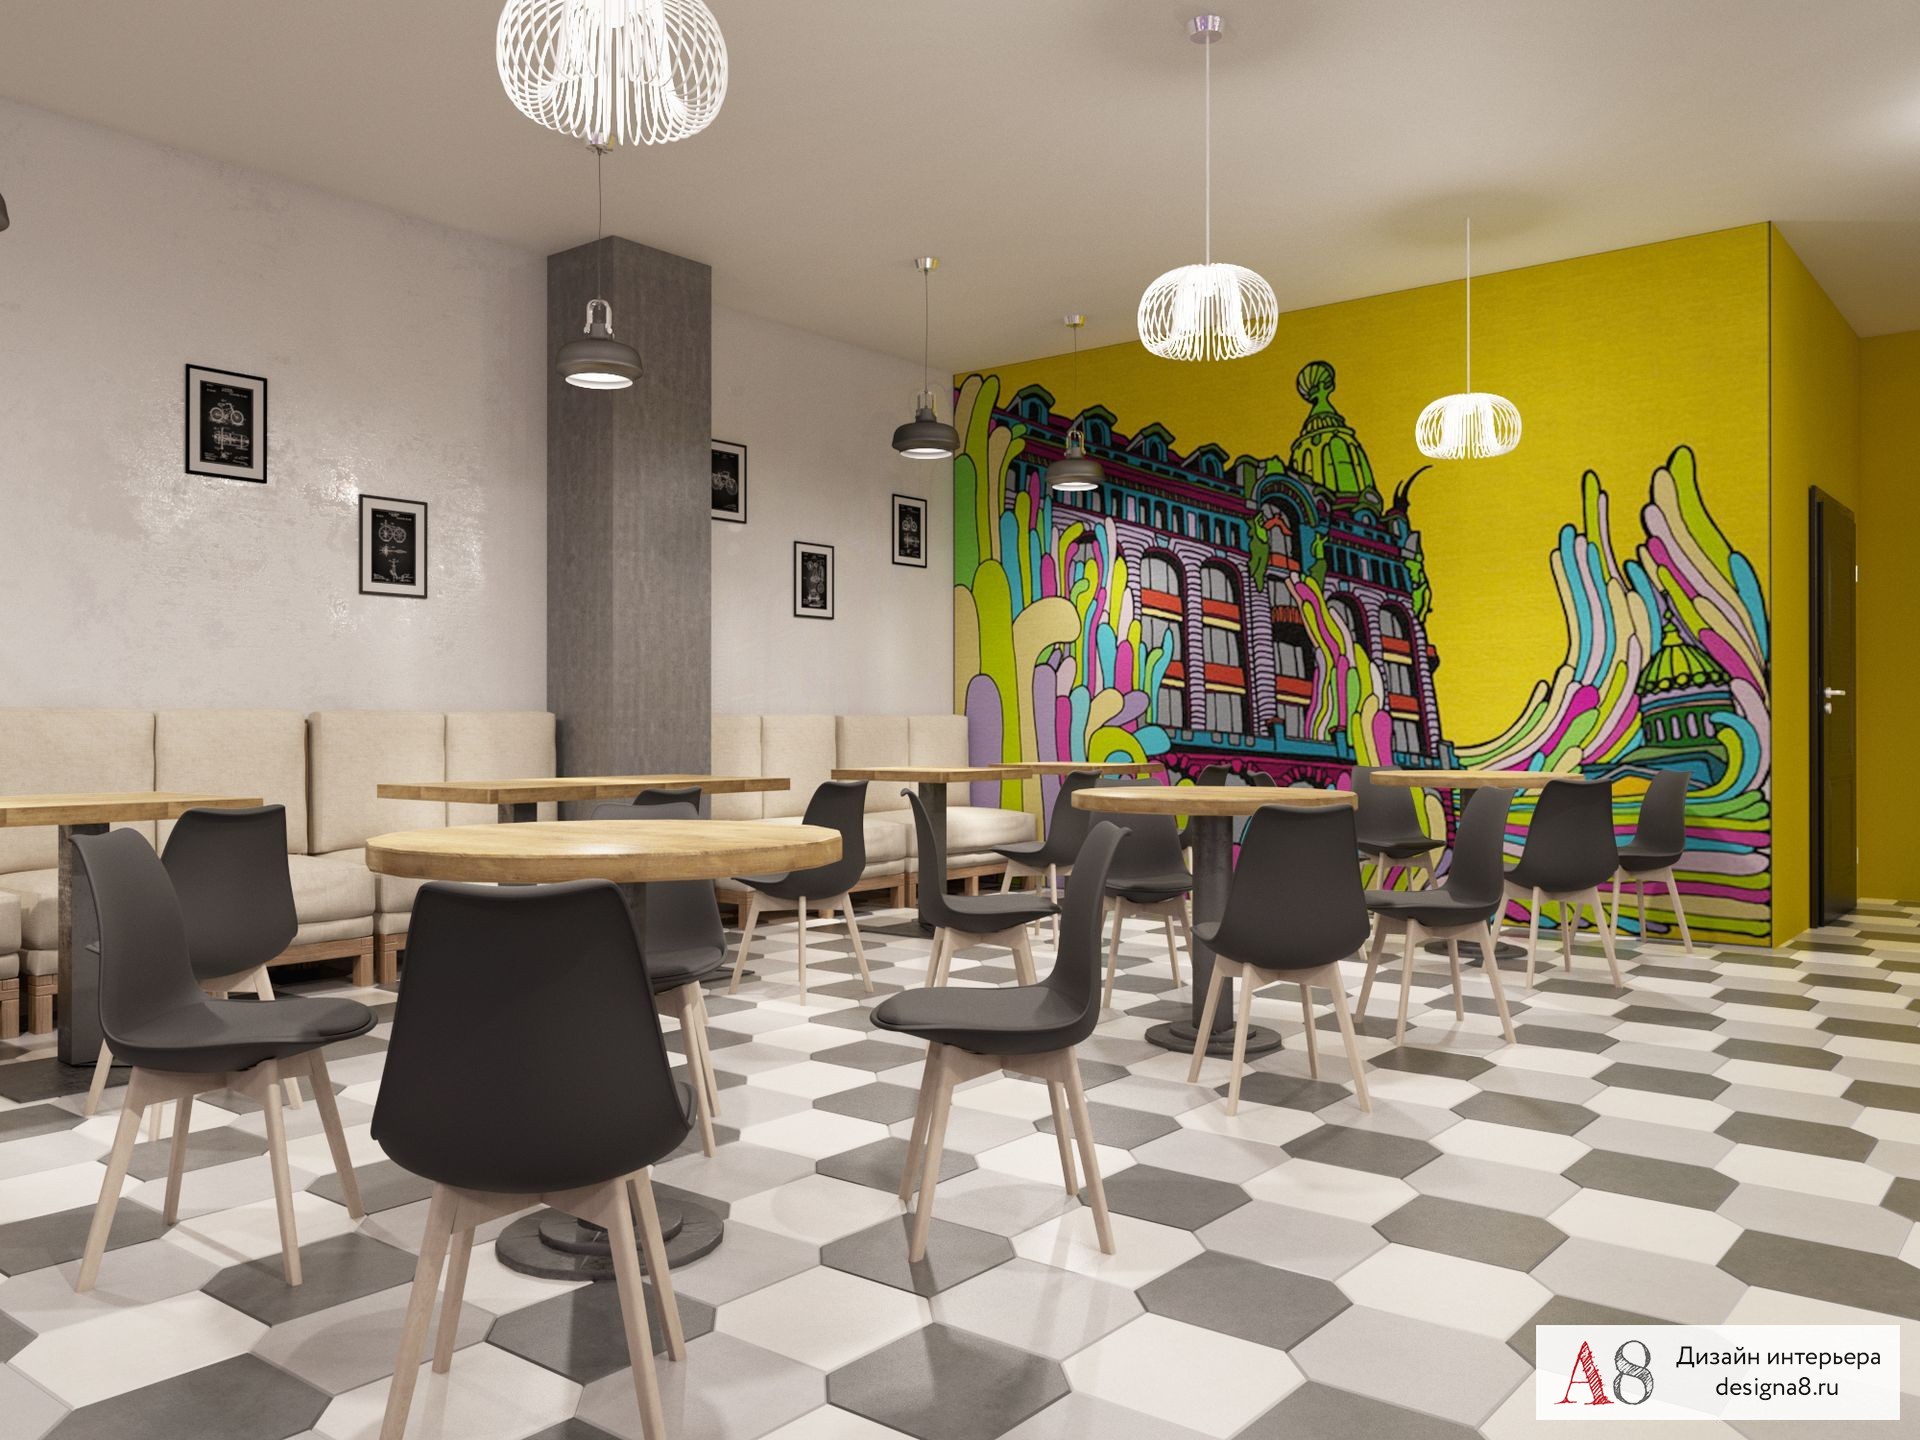 Интерьер зала ресторана с фотографиями и вариантами дизайна на проекте АрхРевю